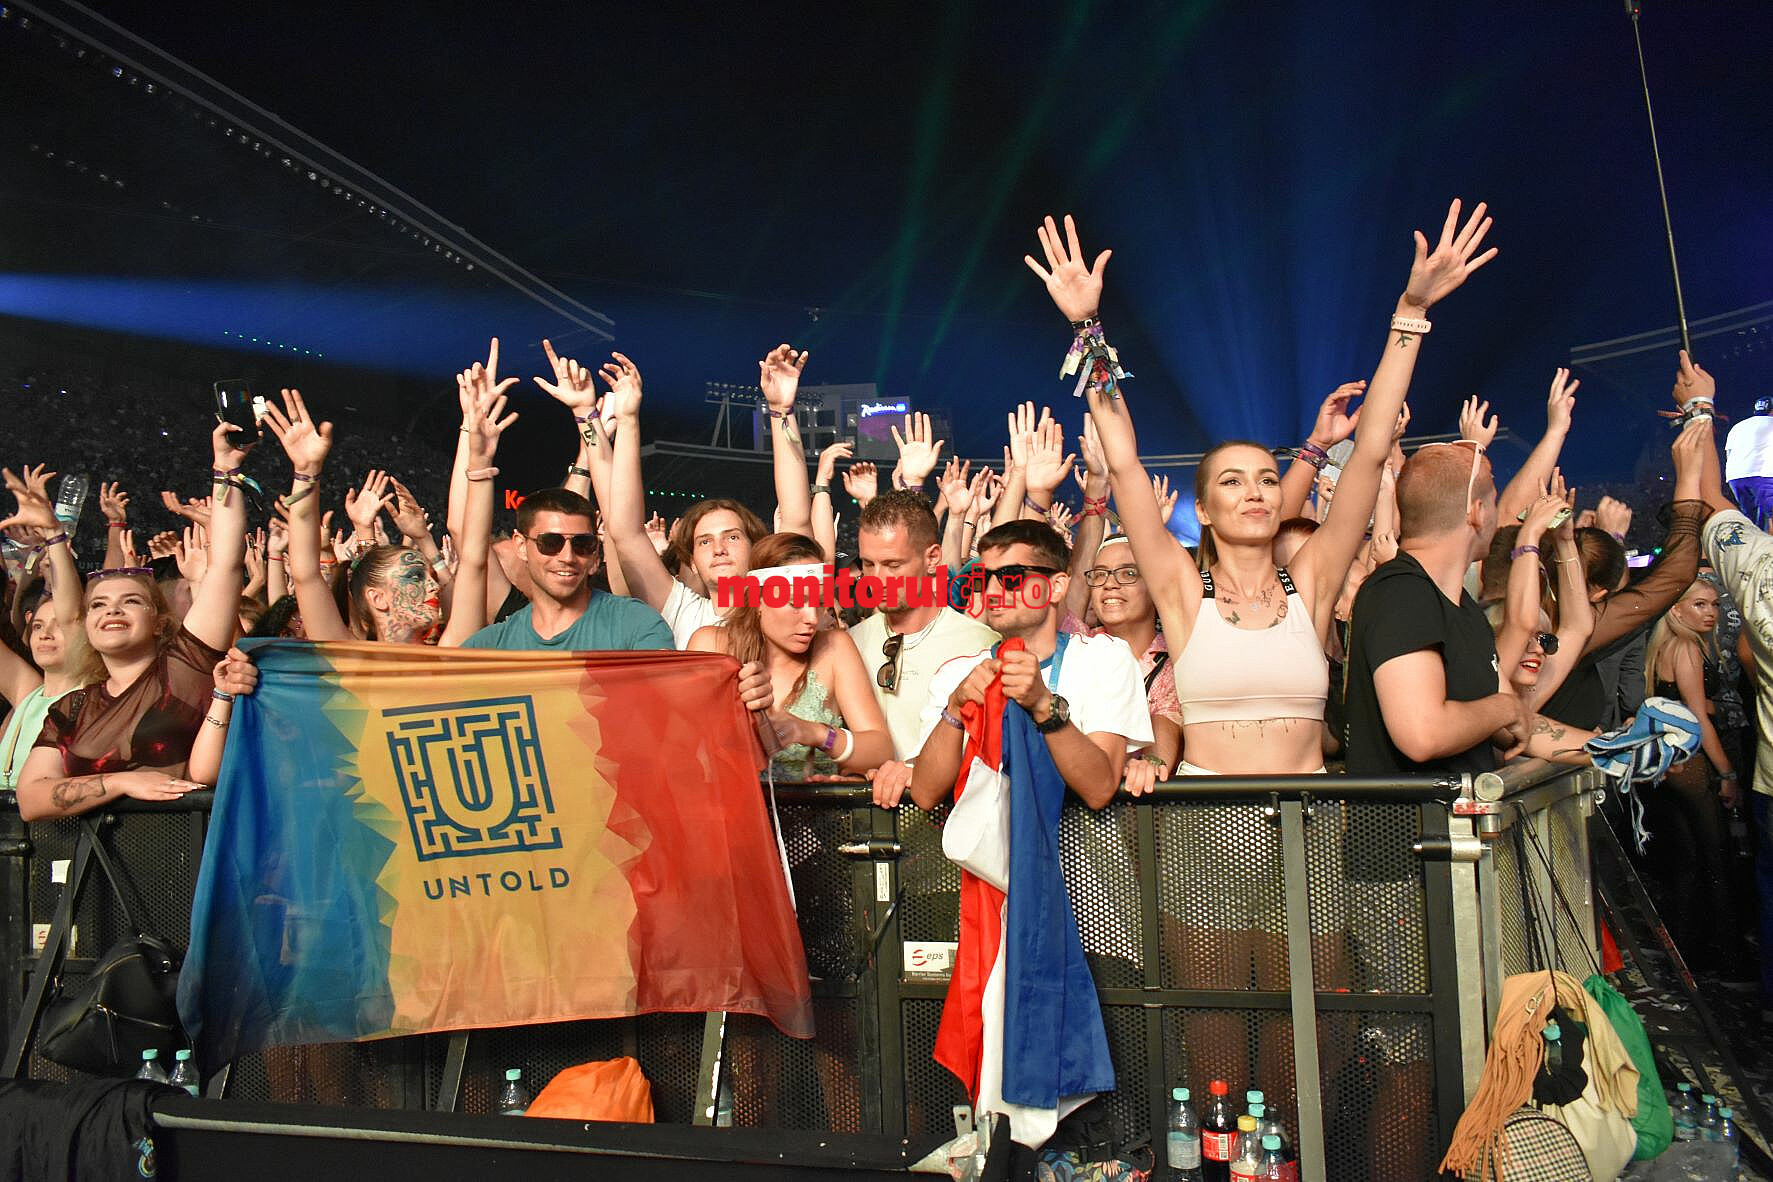 Peste 95.000 de mii de fani au făcut parte din povestea magică Untold, în cea de-a treia zi de festival. FOTO: Eliza Lucaciu/ Monitorul de Cluj